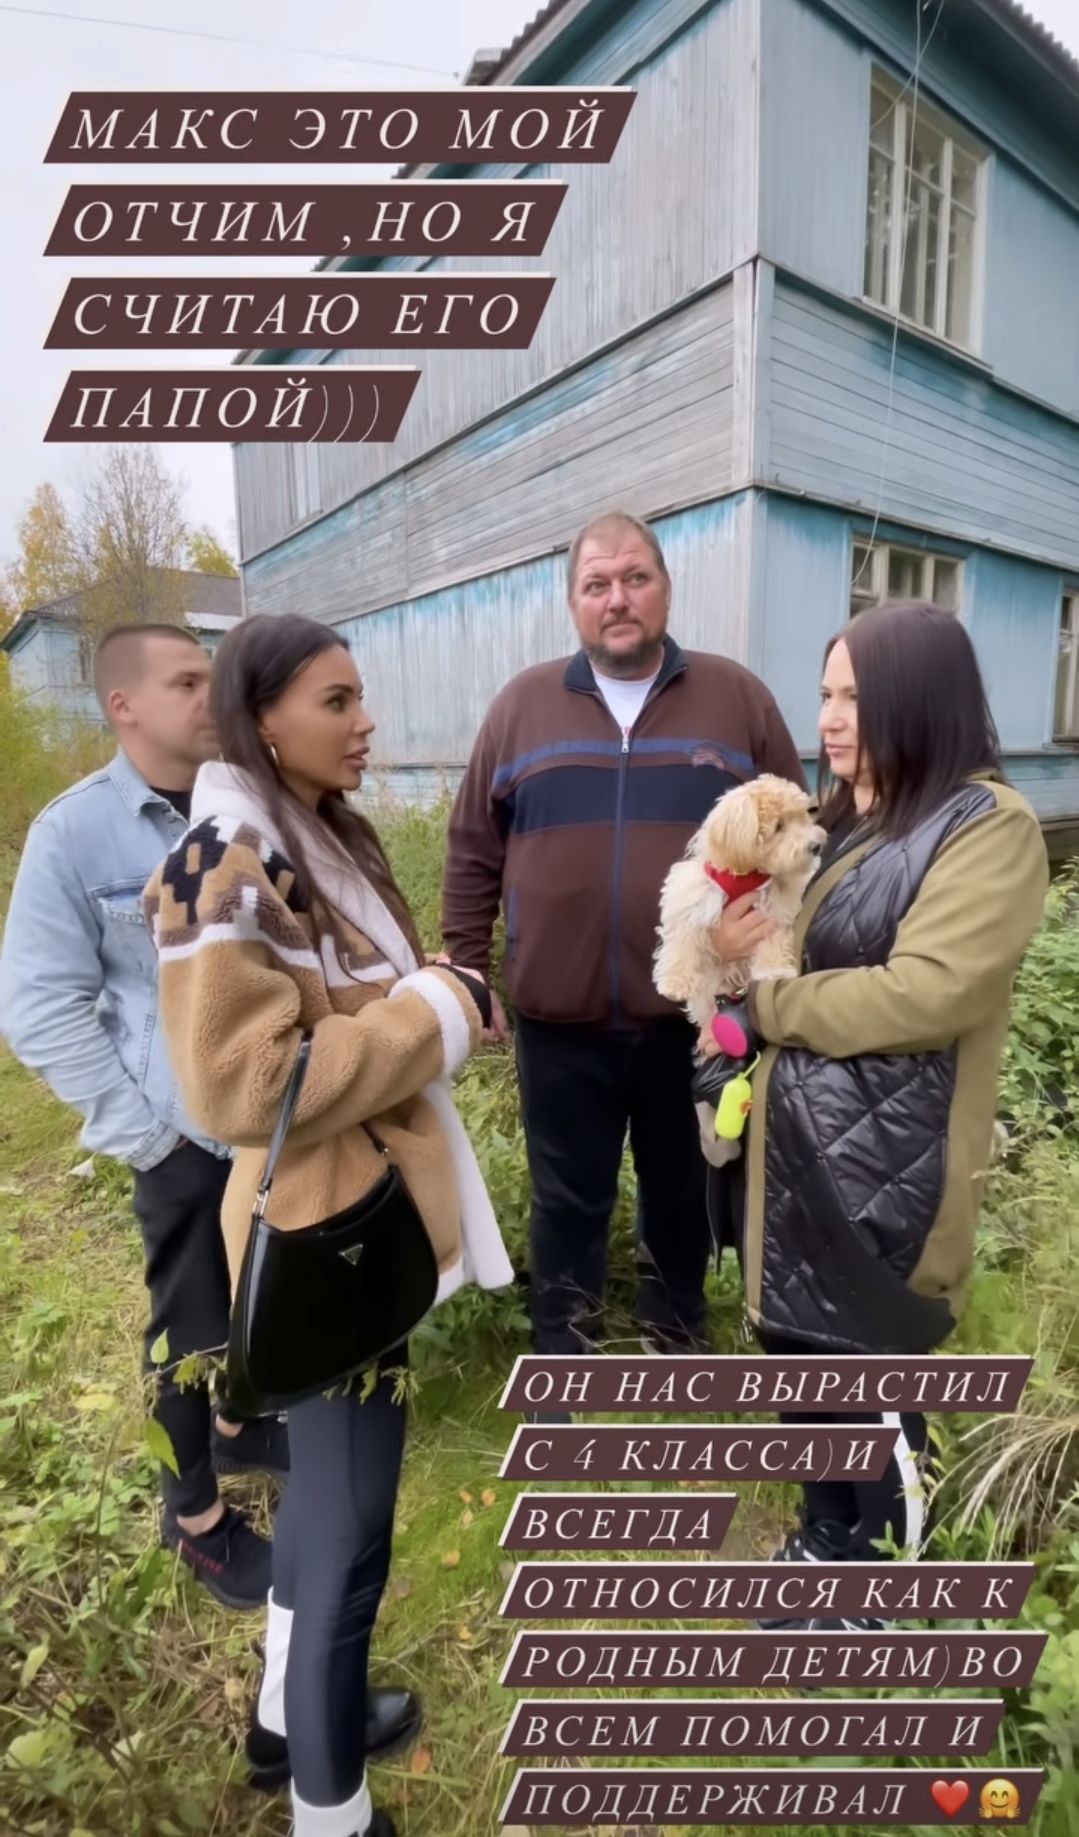 Оксана Самойлова поведала историю встречи с отцом и, наконец, показала его